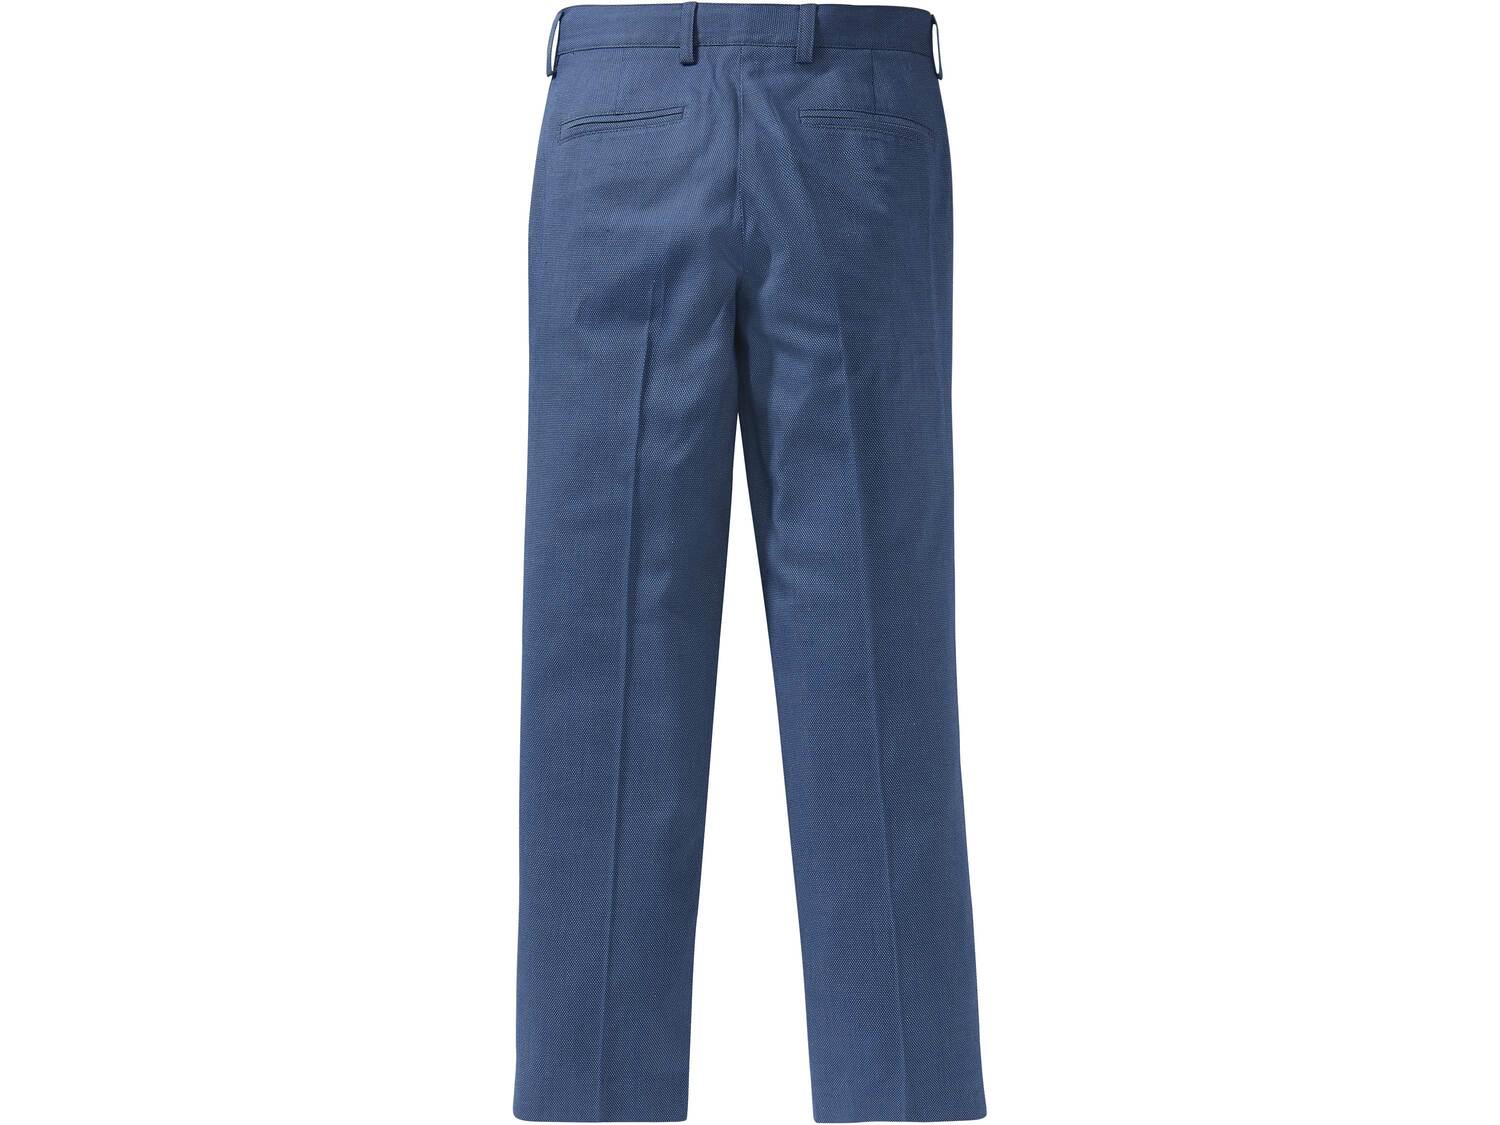 Spodnie garniturowe chłopięce Pepperts, cena 45,00 PLN 
- rozmiary: 128-164
- ...